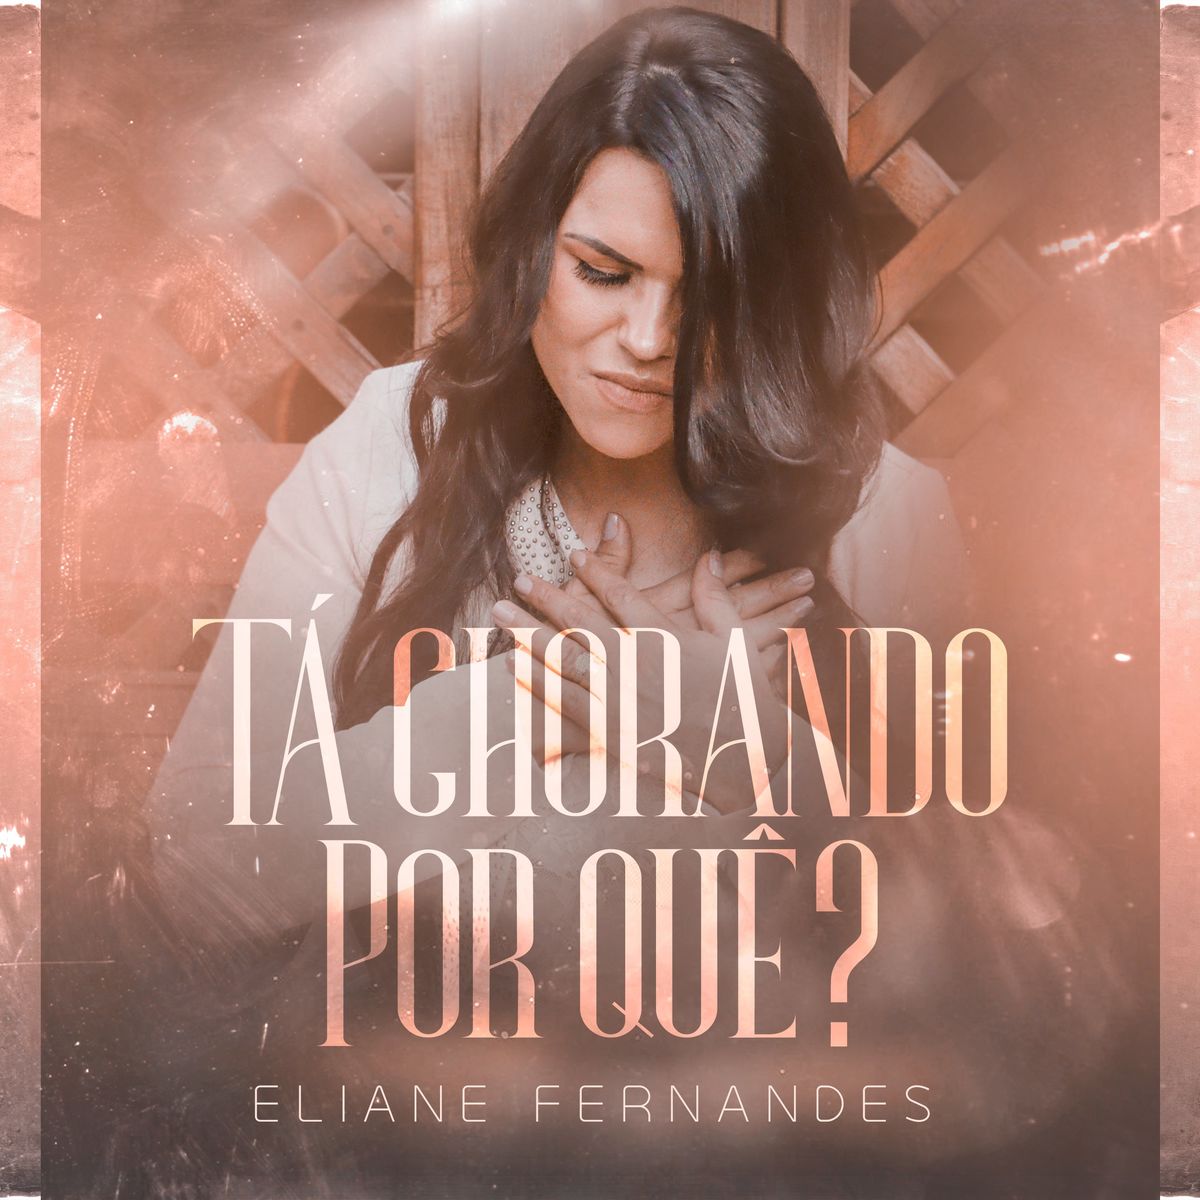 Eliane Fernandes – Tà Chorando por Quê